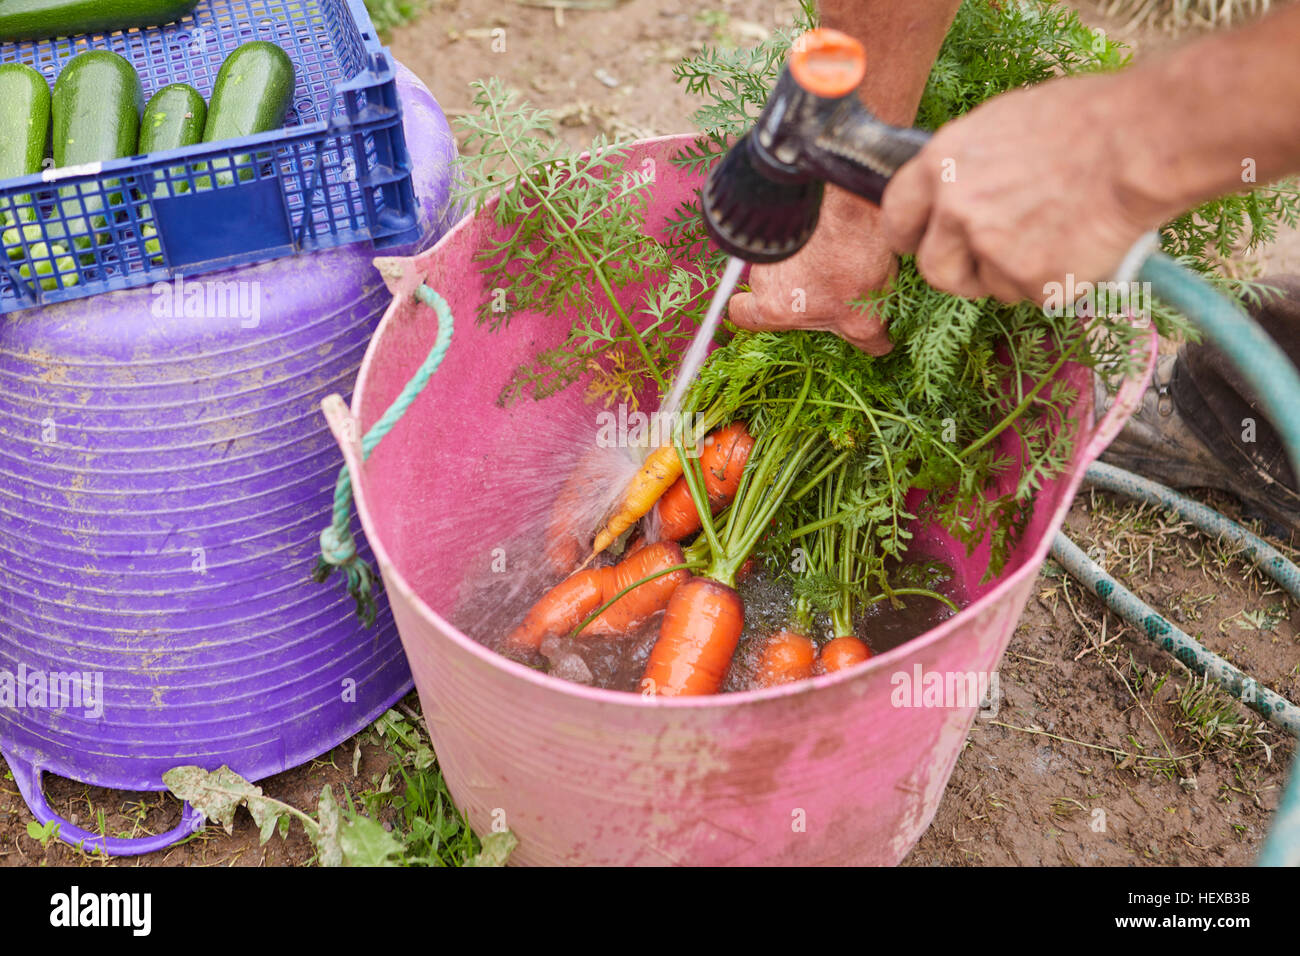 Vista recortada del hombre recién cosechados, lavado de zanahorias de trug Foto de stock